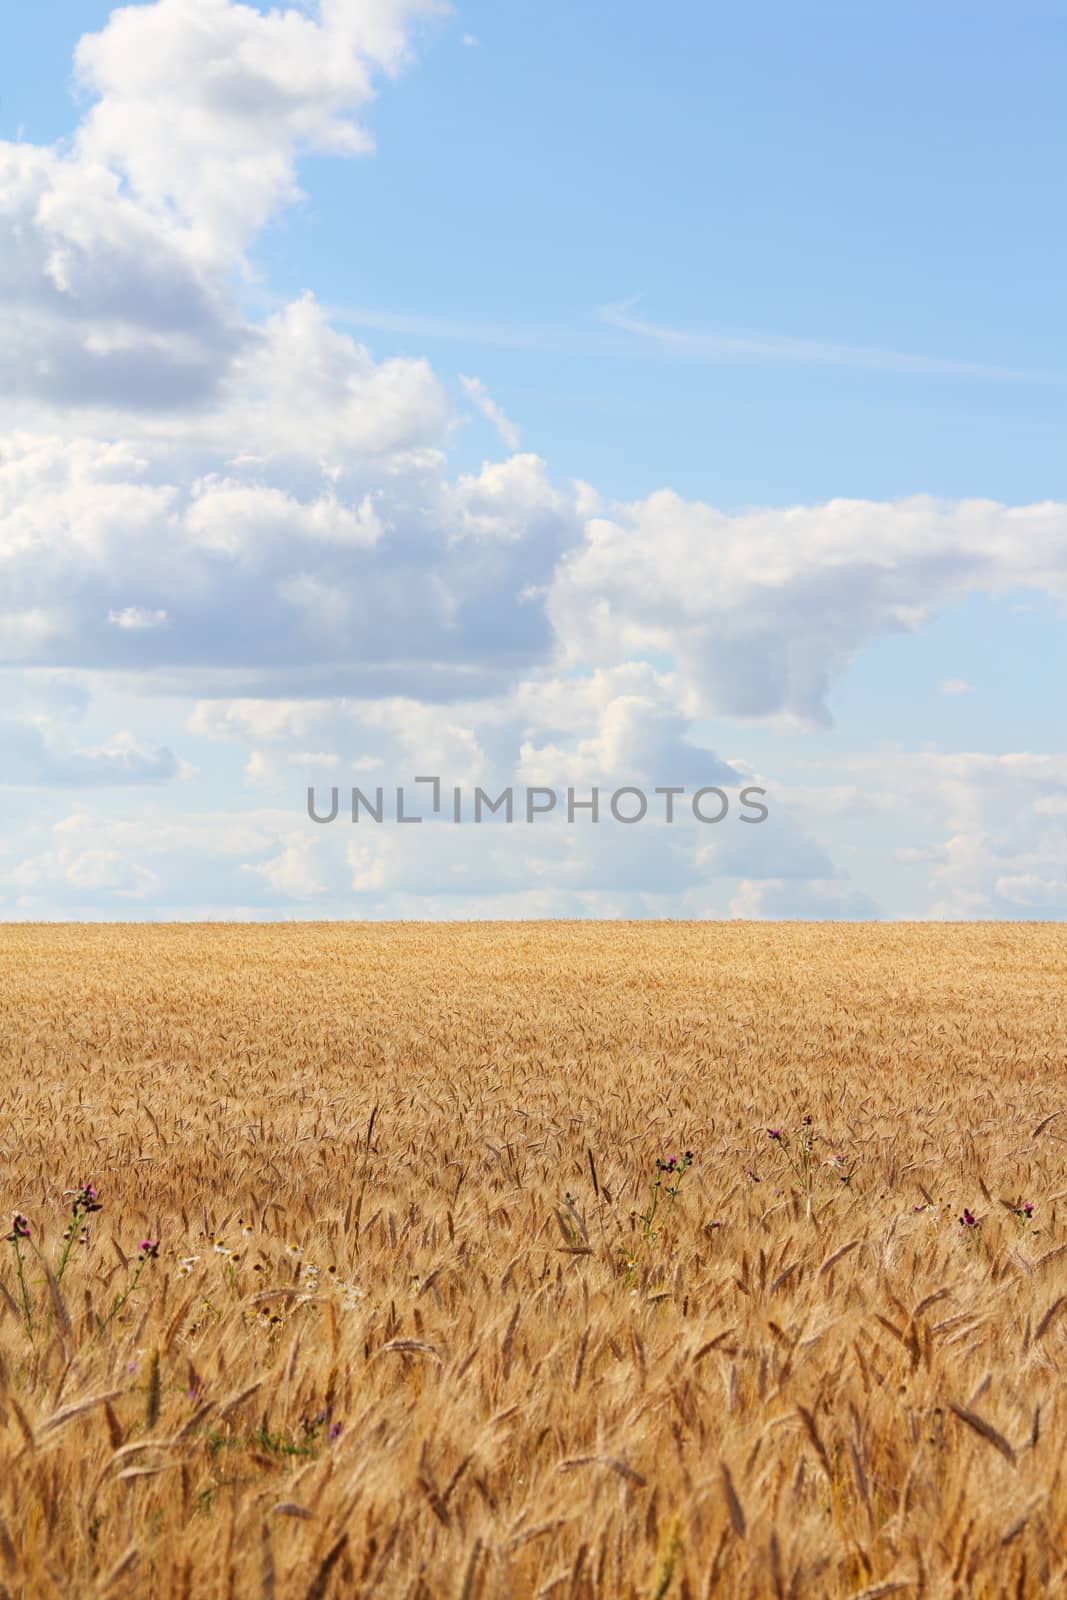 Golden wheat field under cloudy blue sky